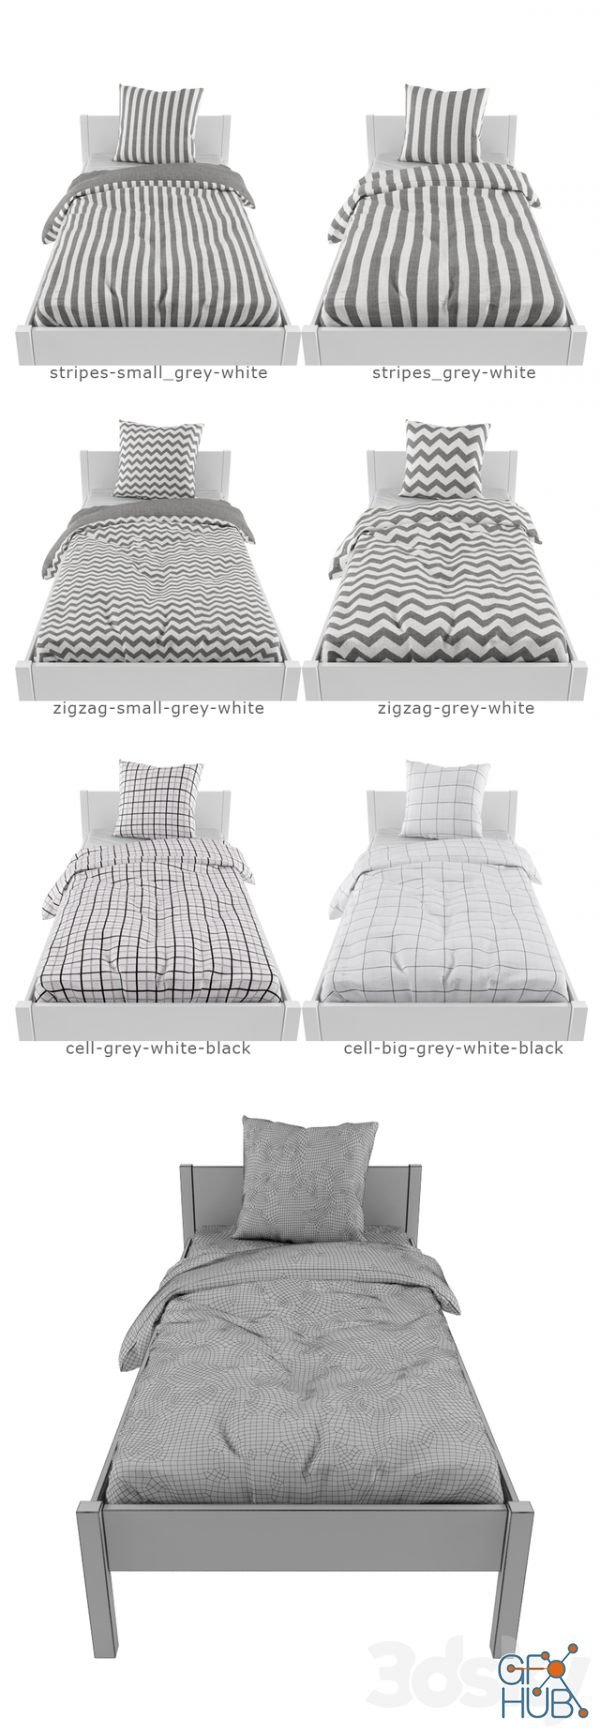 Bed linen 03